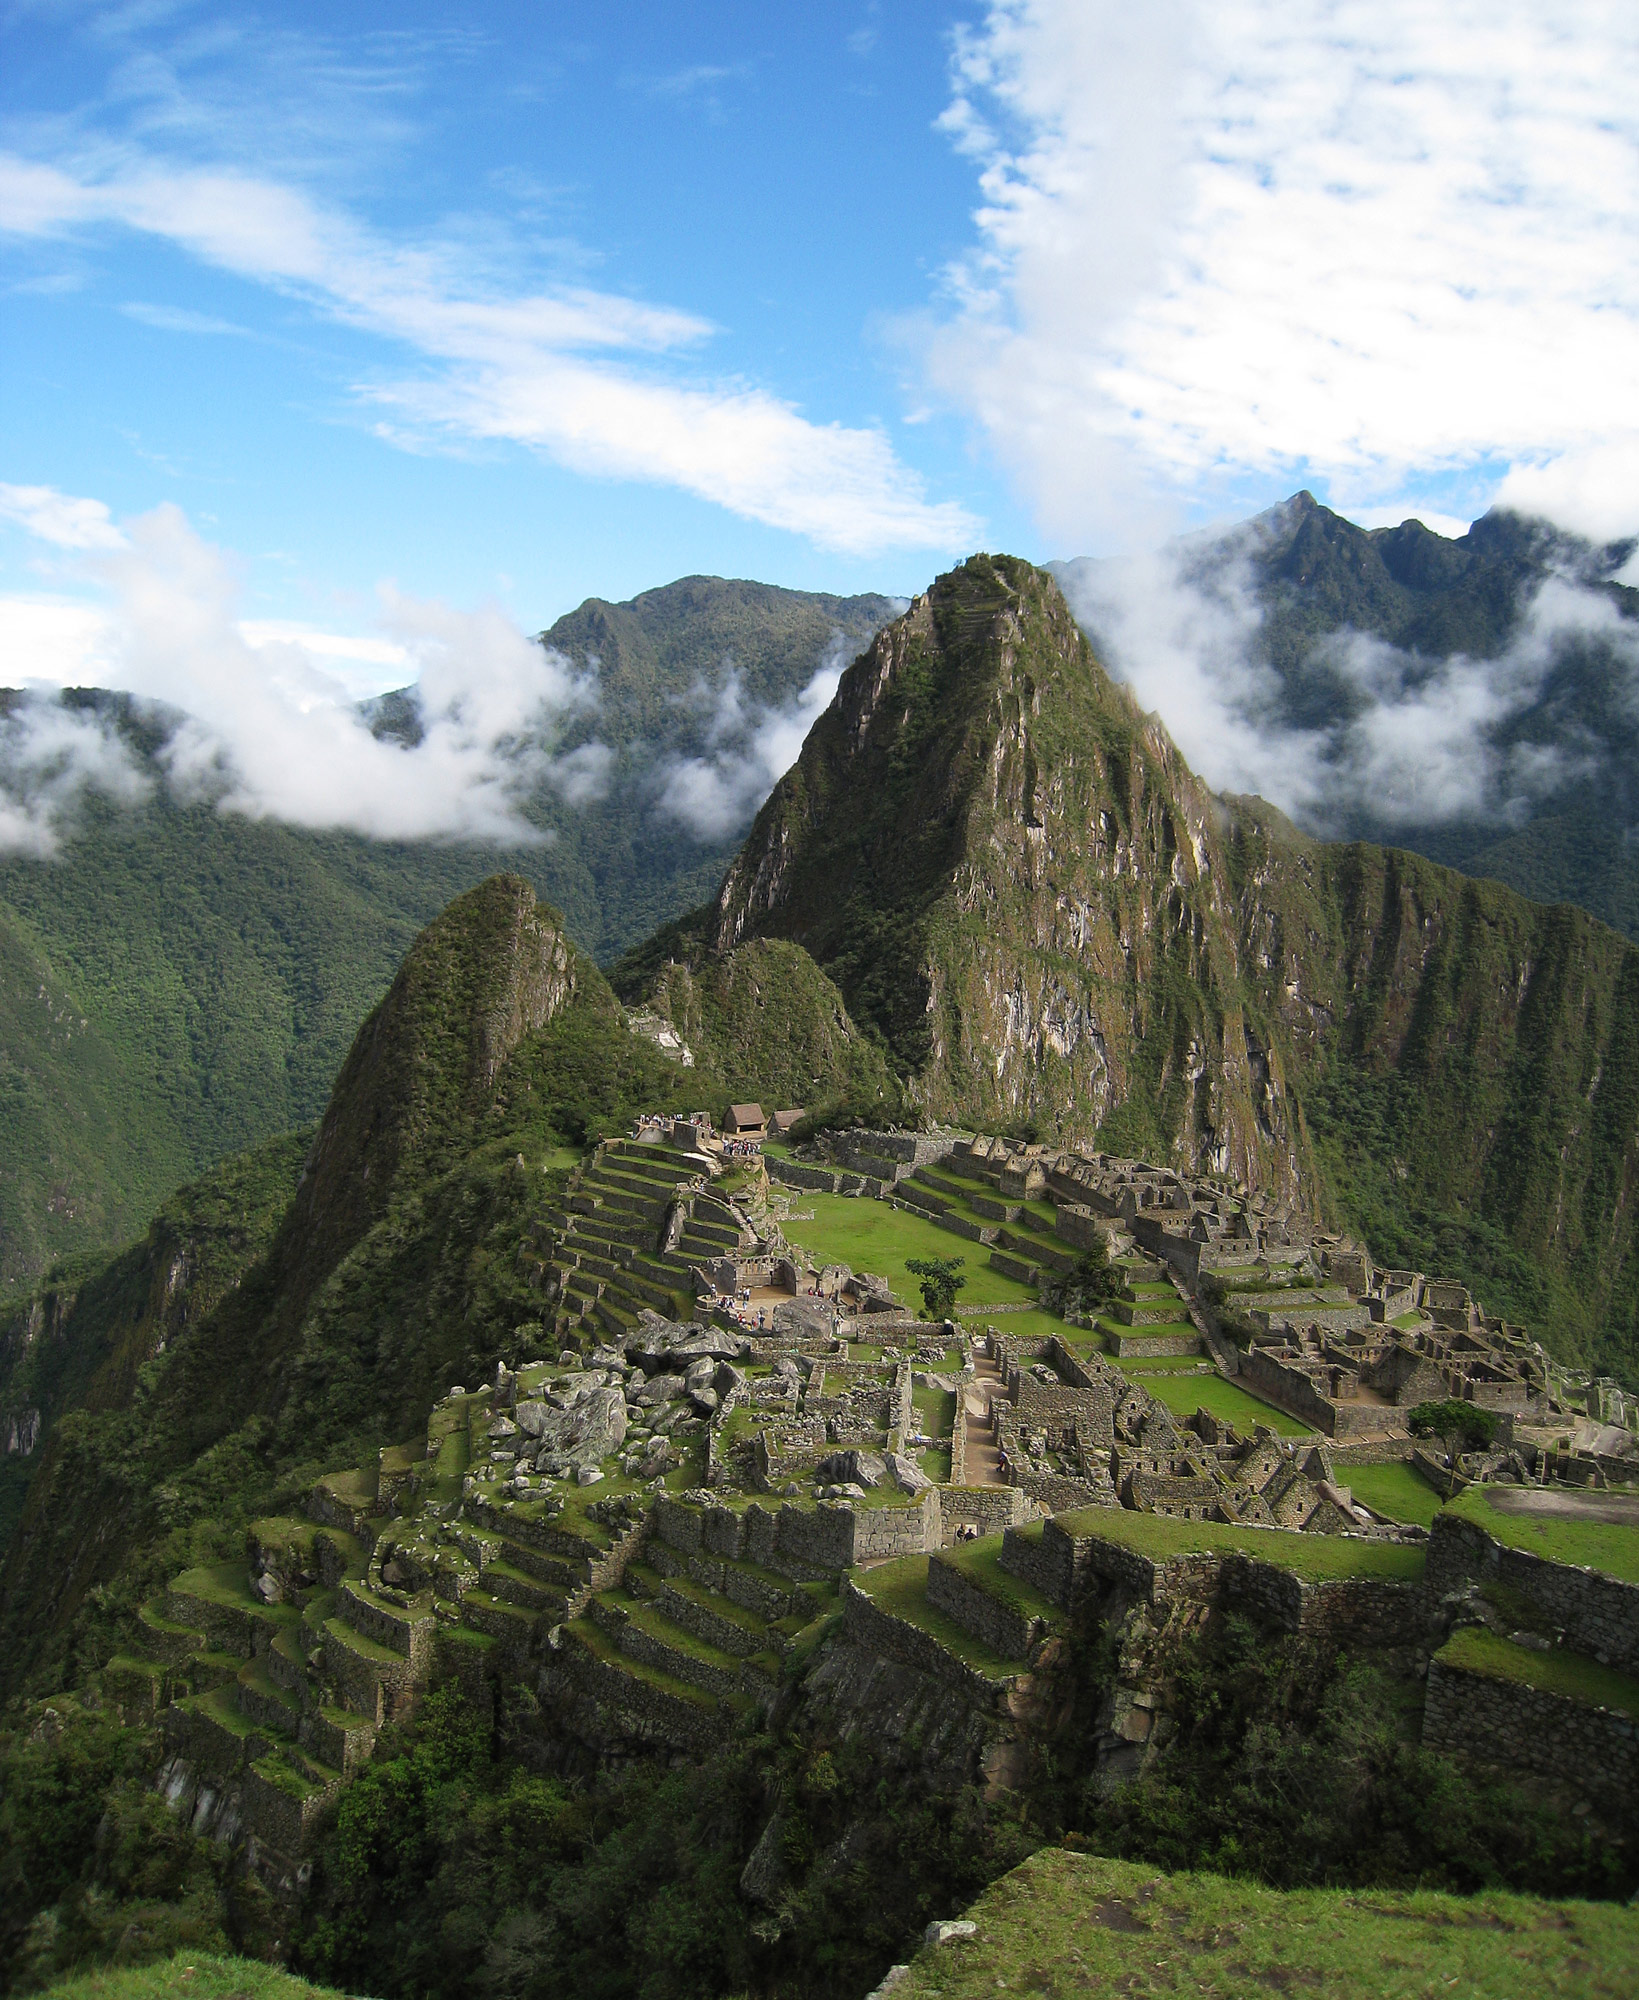 Cele mai cunoscute ruine antice din Peru, Machu Picchu. Fotografie realizată de utilizatorul Flickr Icelight (CC BY).